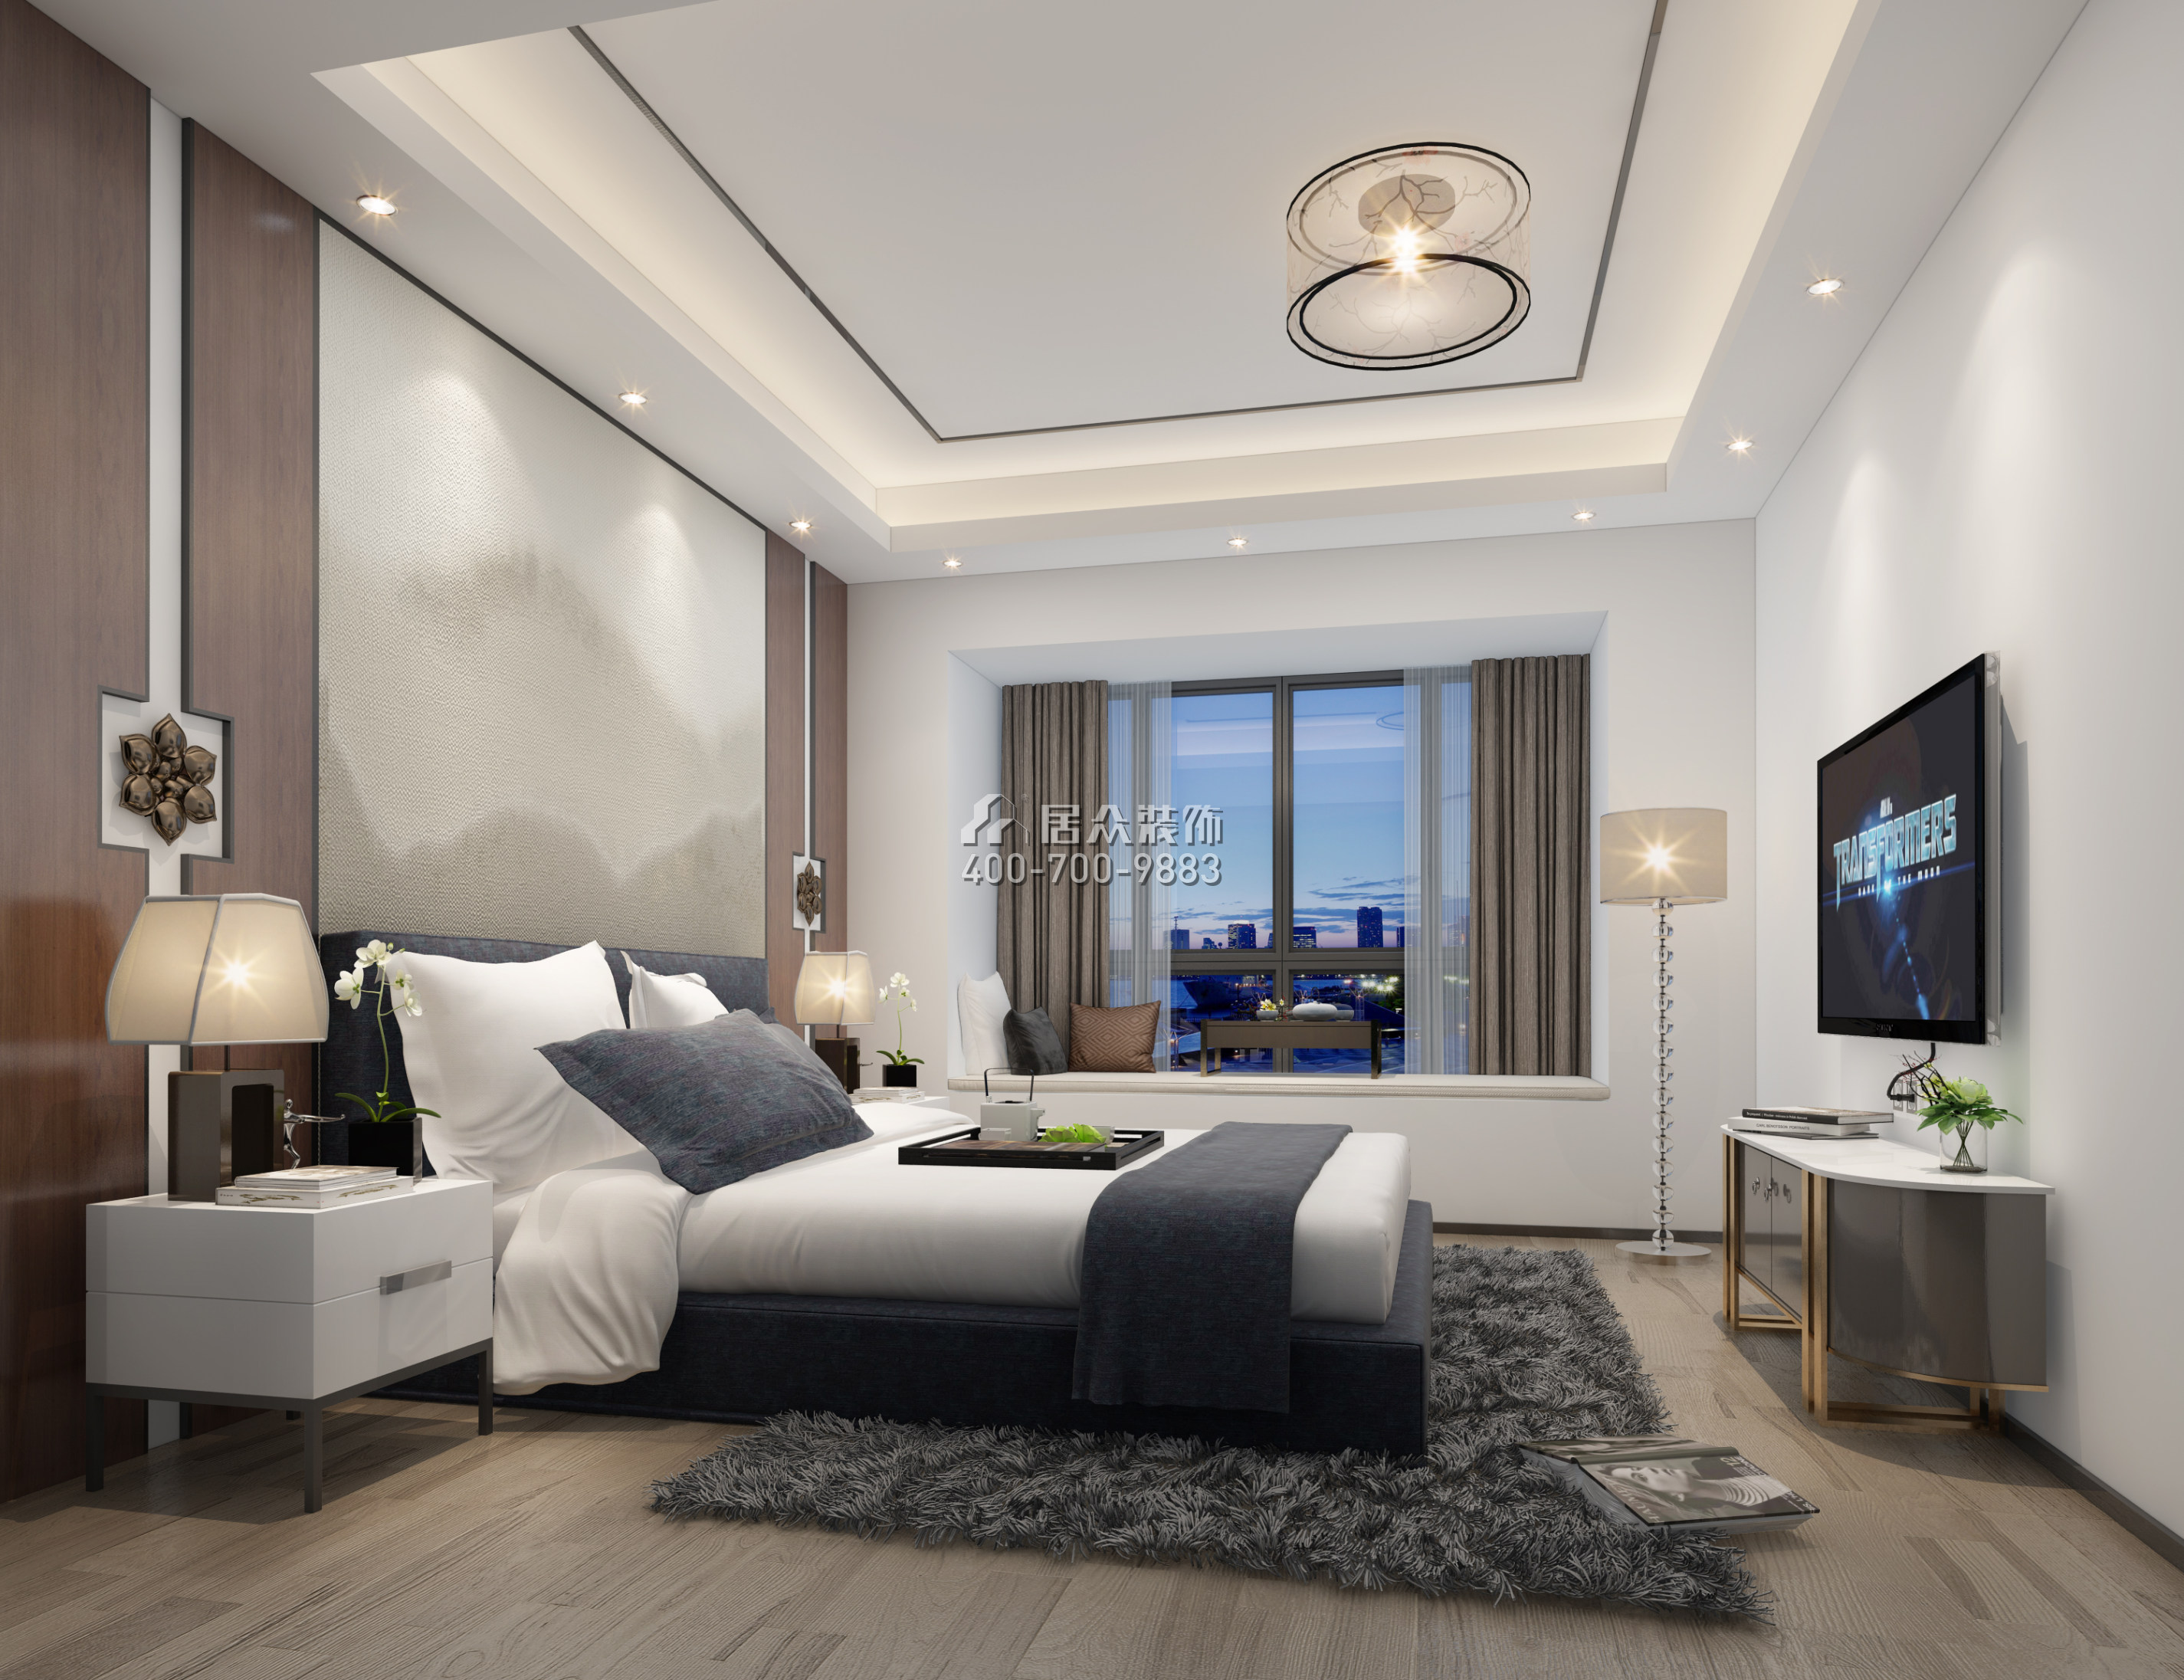 中熙君墅湾135平方米中式风格平层户型卧室装修效果图